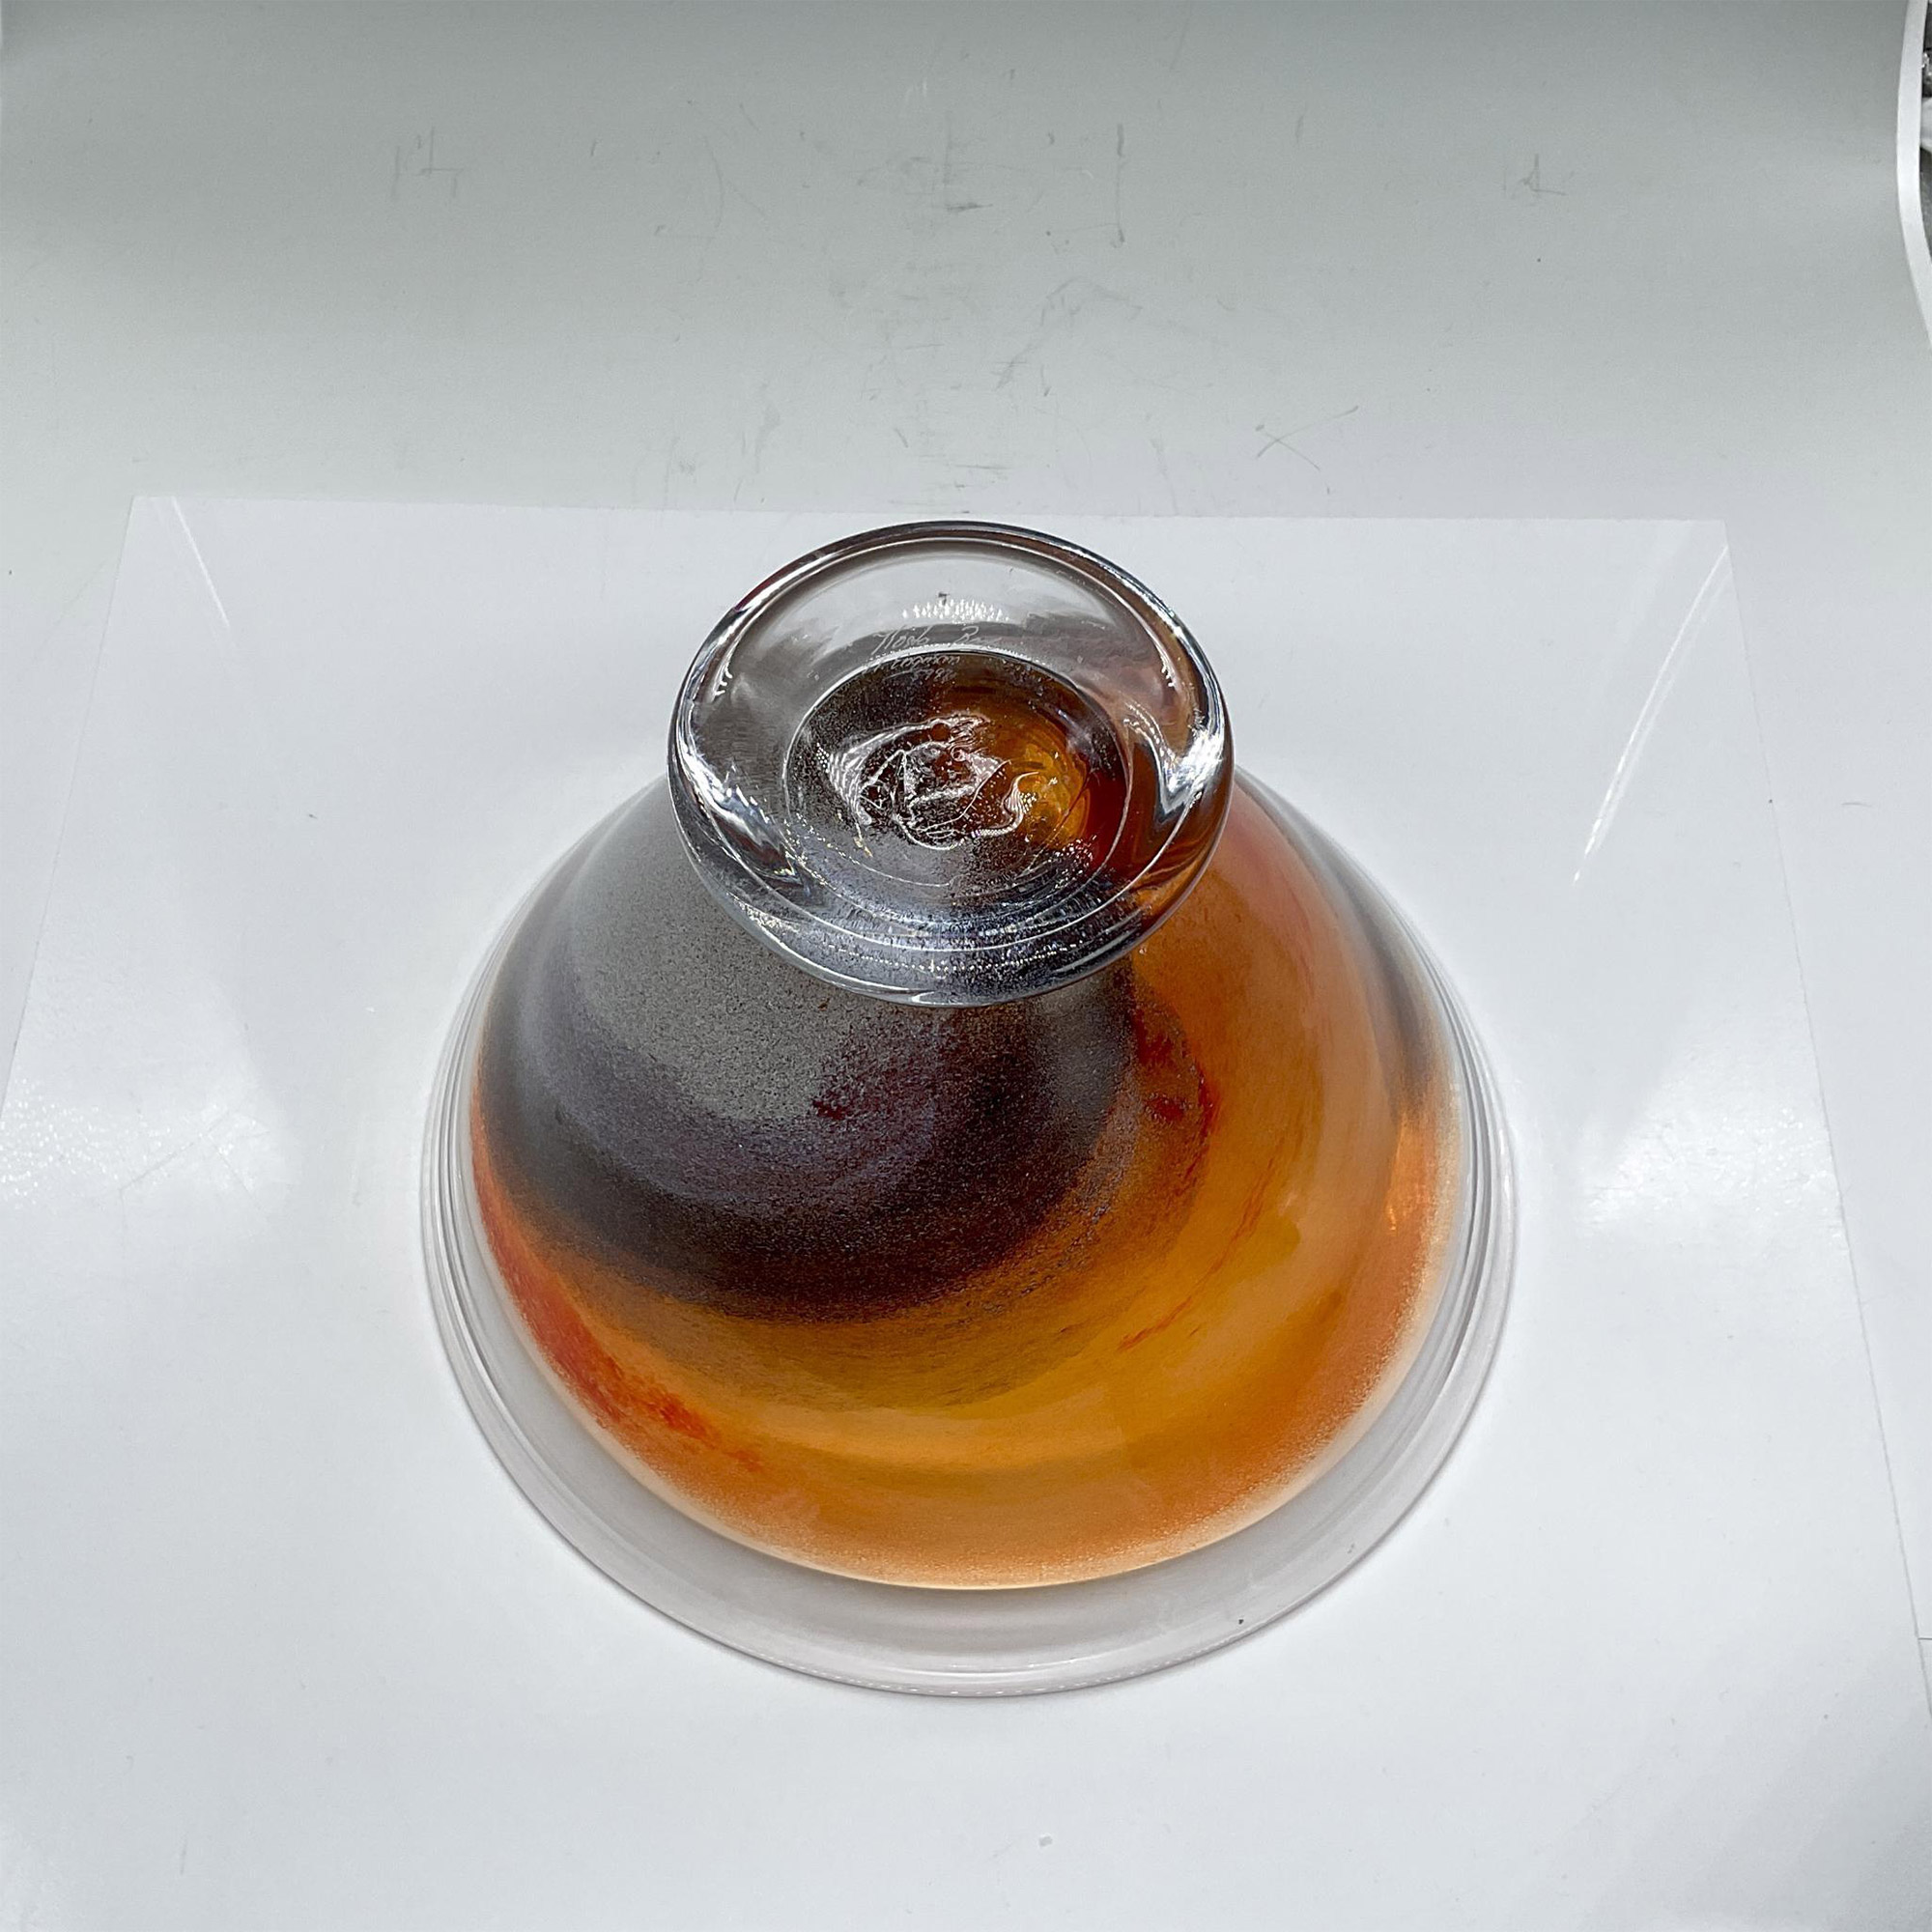 Kosta Boda Glass Twister Bowl - Image 3 of 3